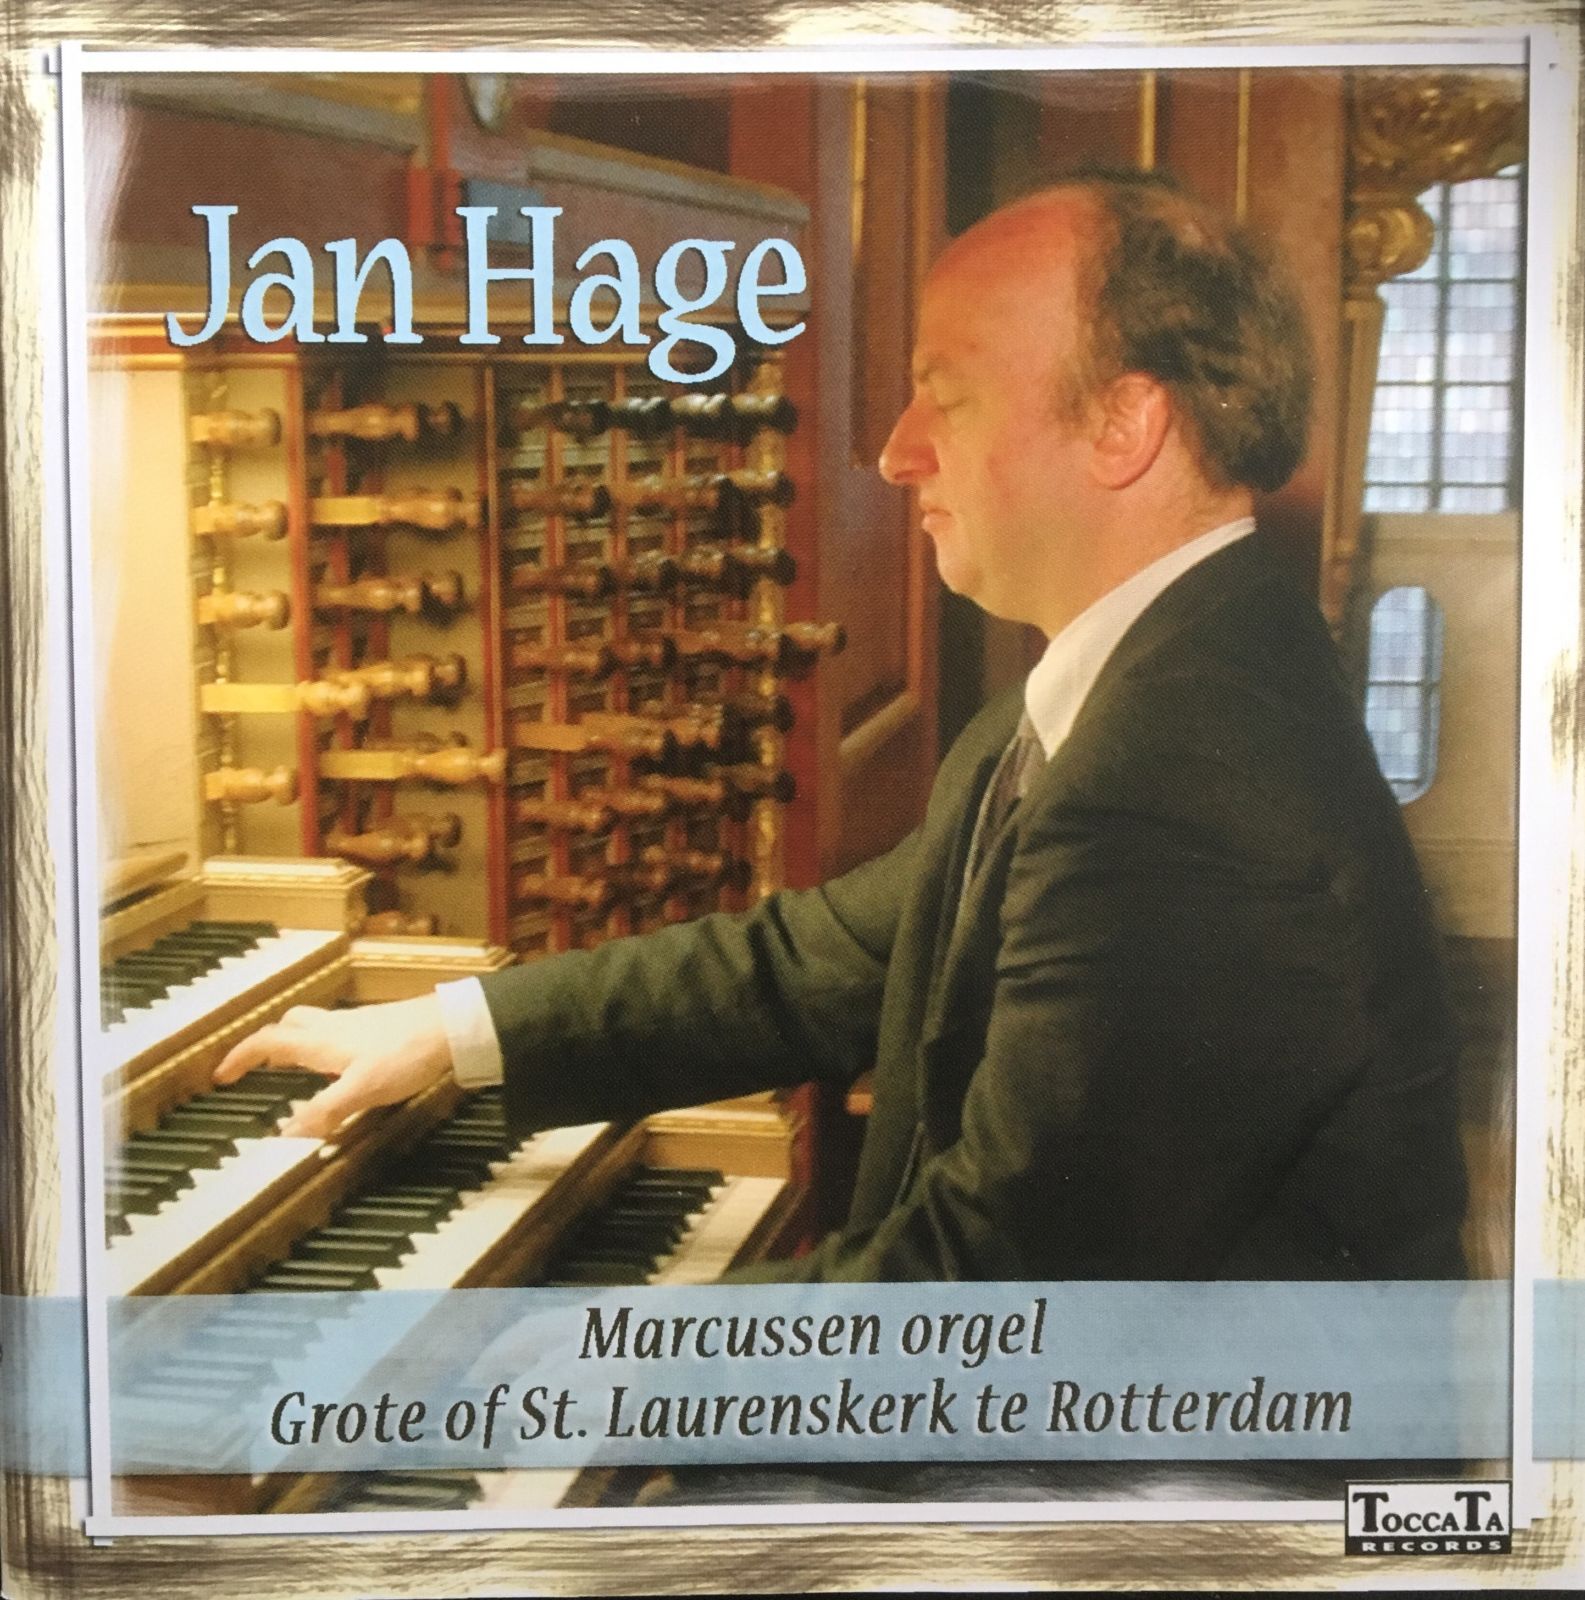 Jan Hage plays on the organ in Grote of St. Laurenskerk in Rotterdam